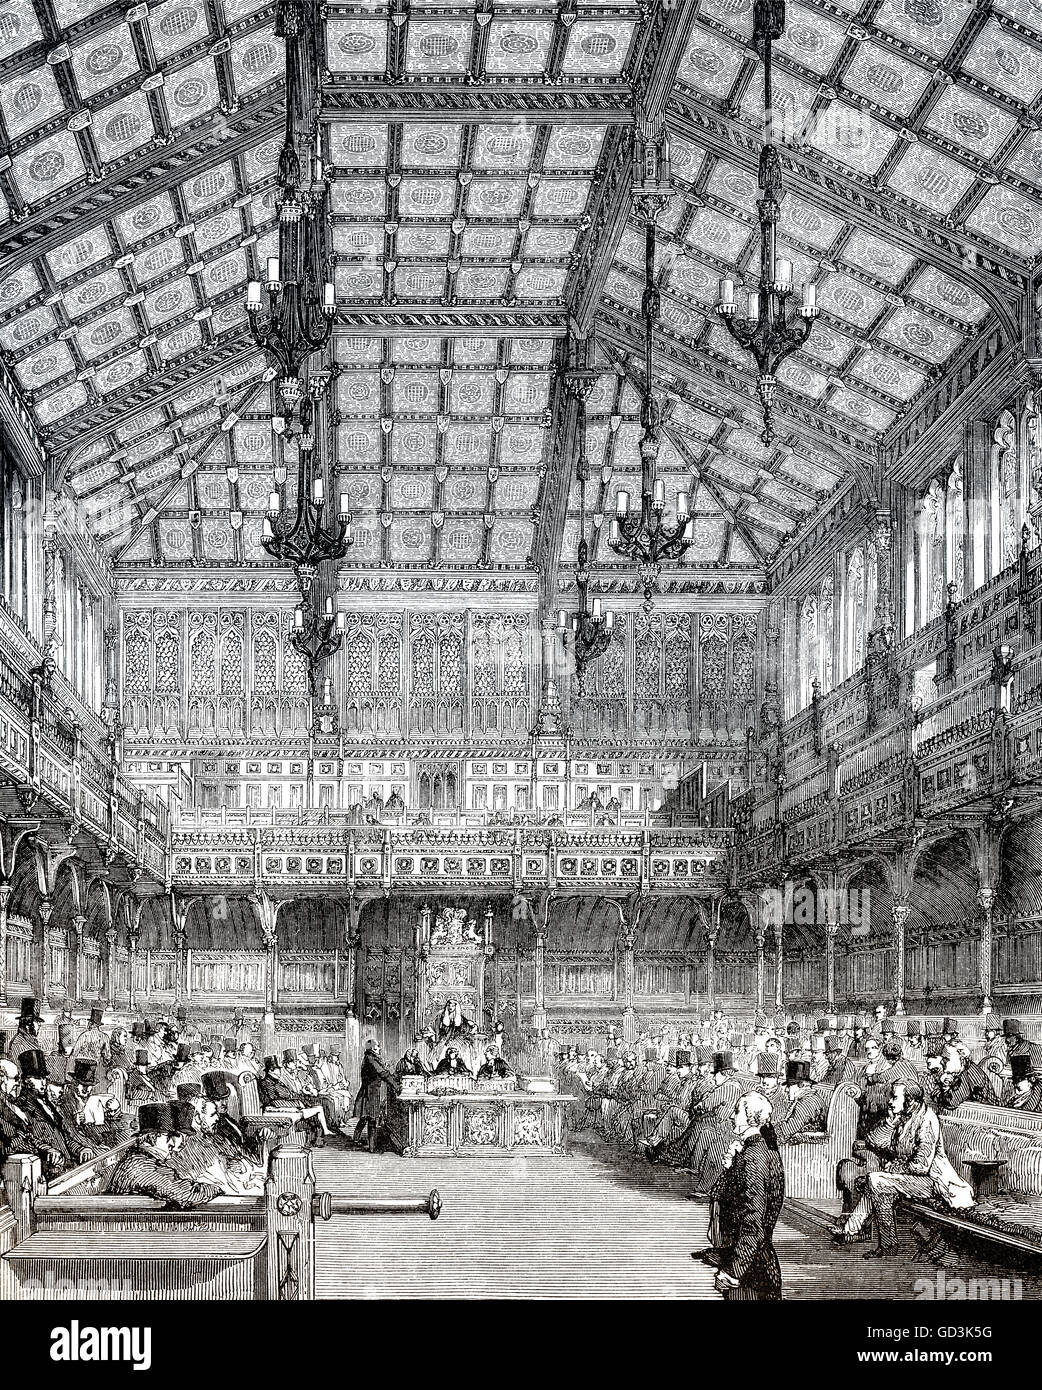 La Chambre des communes, Londres, Angleterre, 19e siècle Banque D'Images